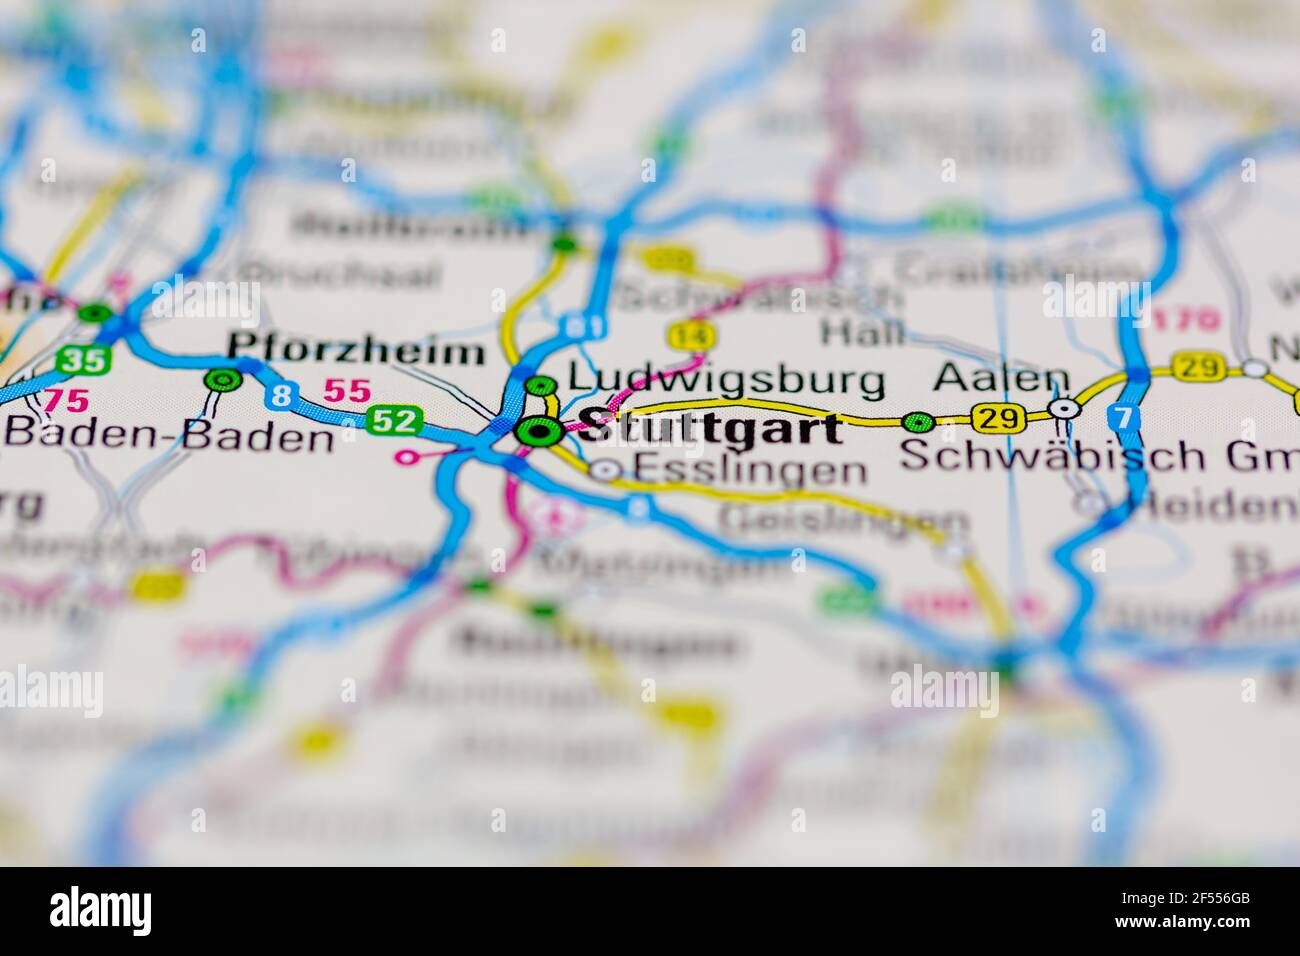 Stuttgart auf einer Geografie- oder Straßenkarte angezeigt Stockfoto